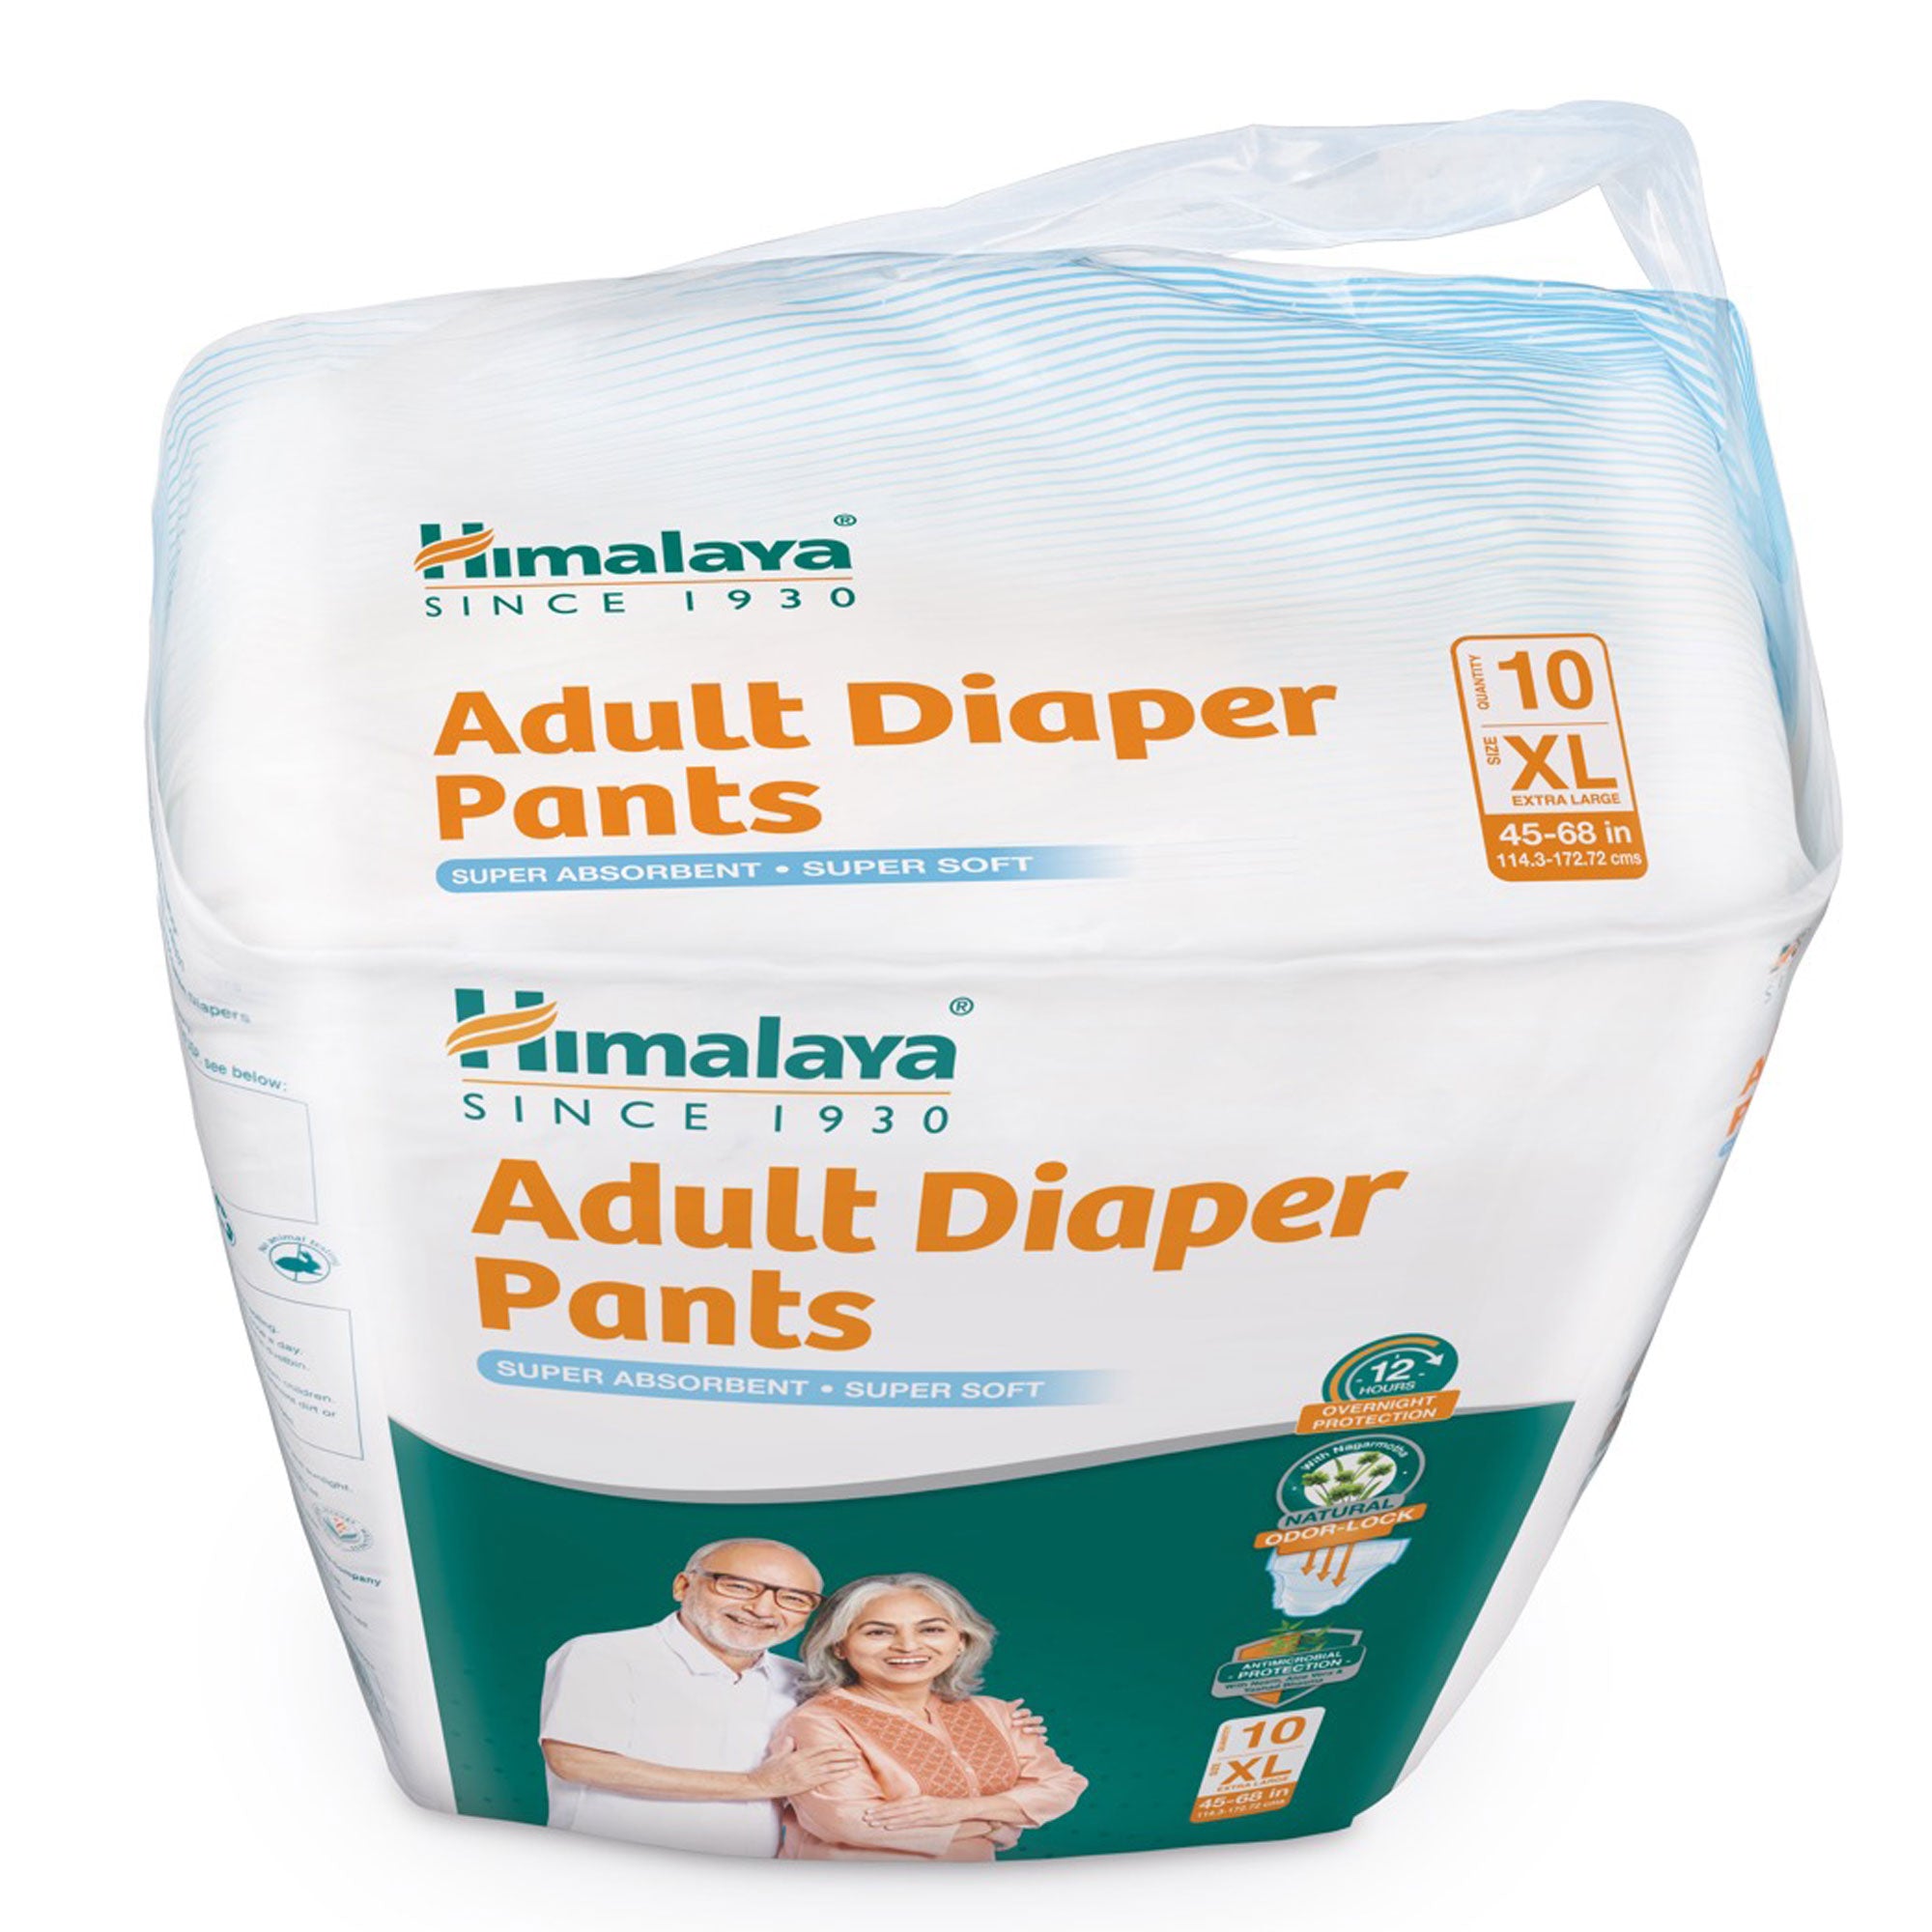 Himalaya Adult Diaper Pants XL